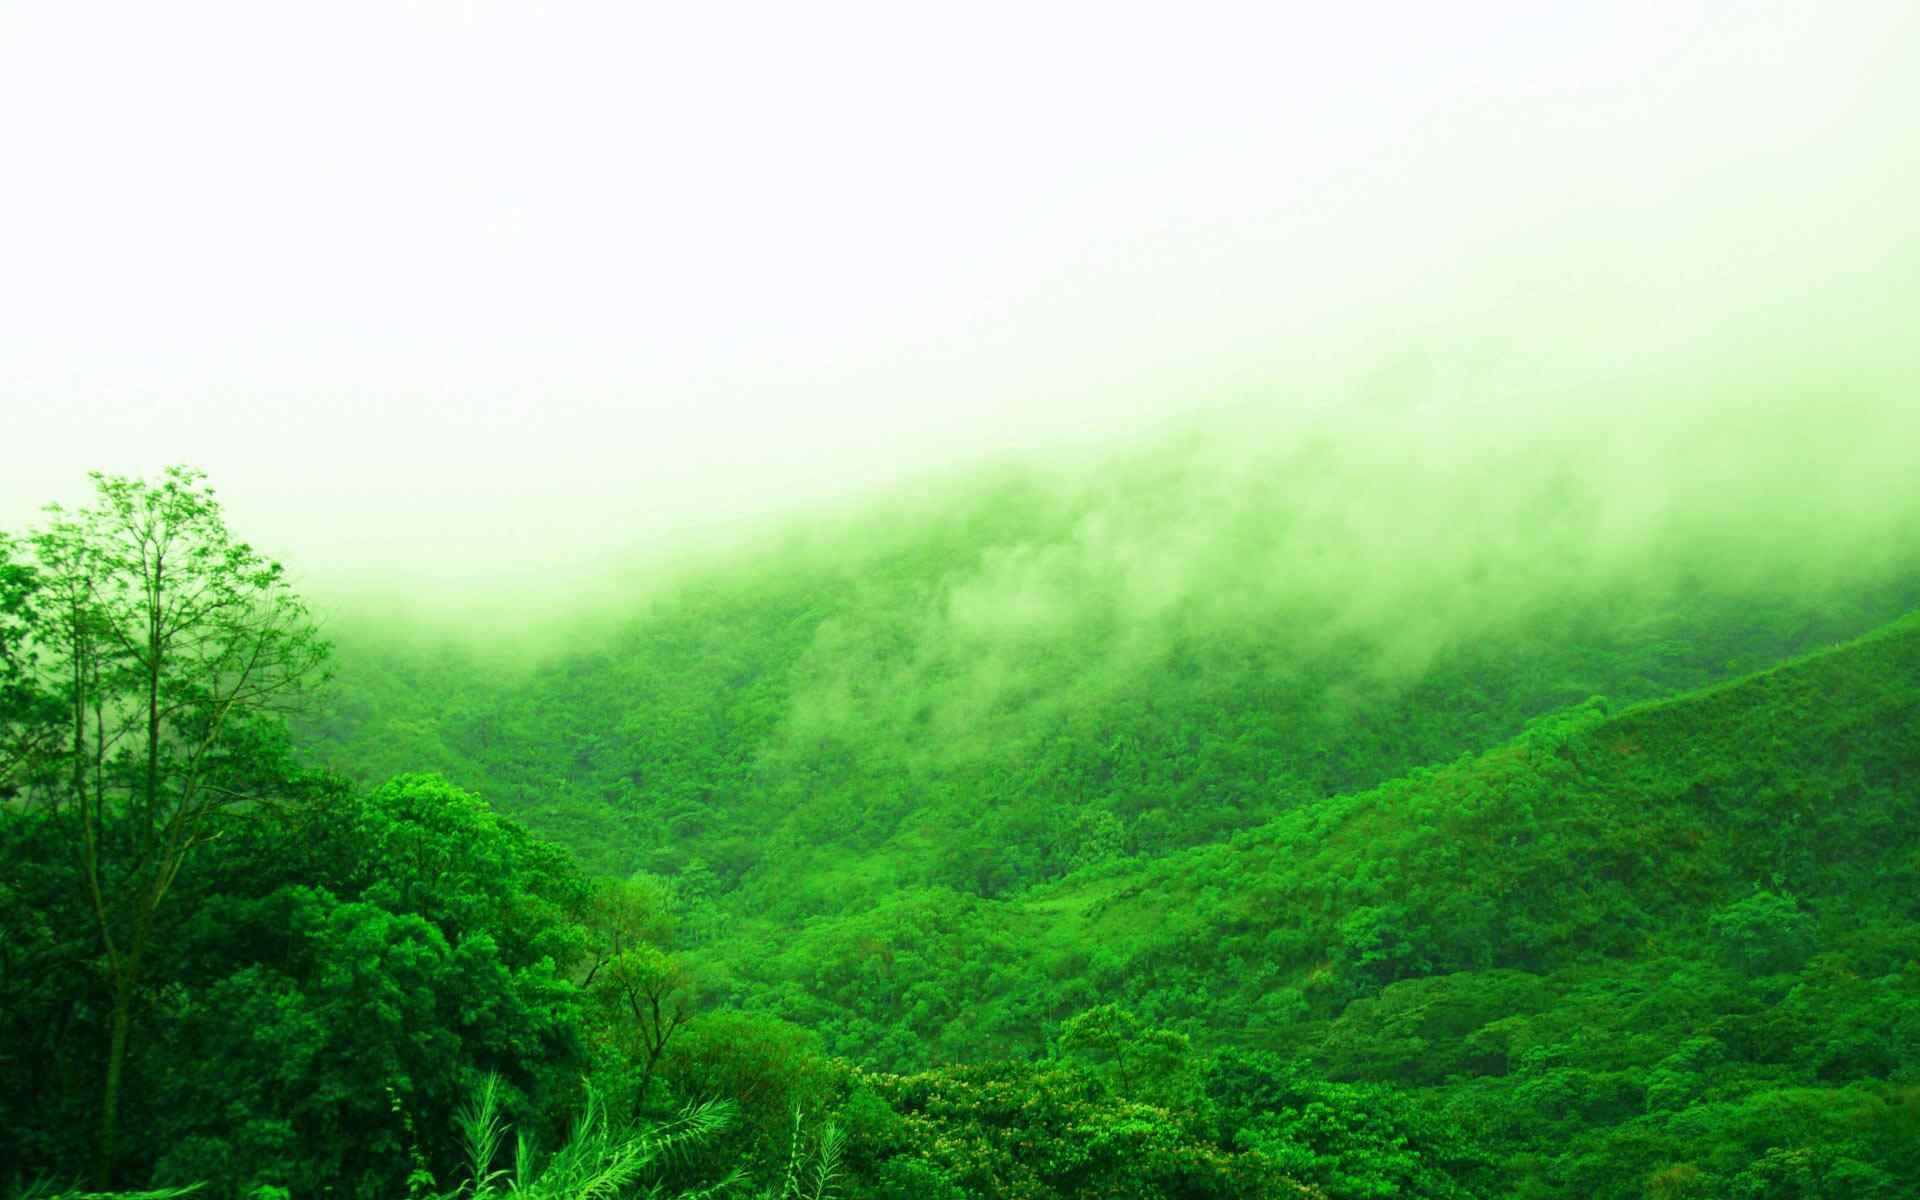 雾气山林风景壁纸